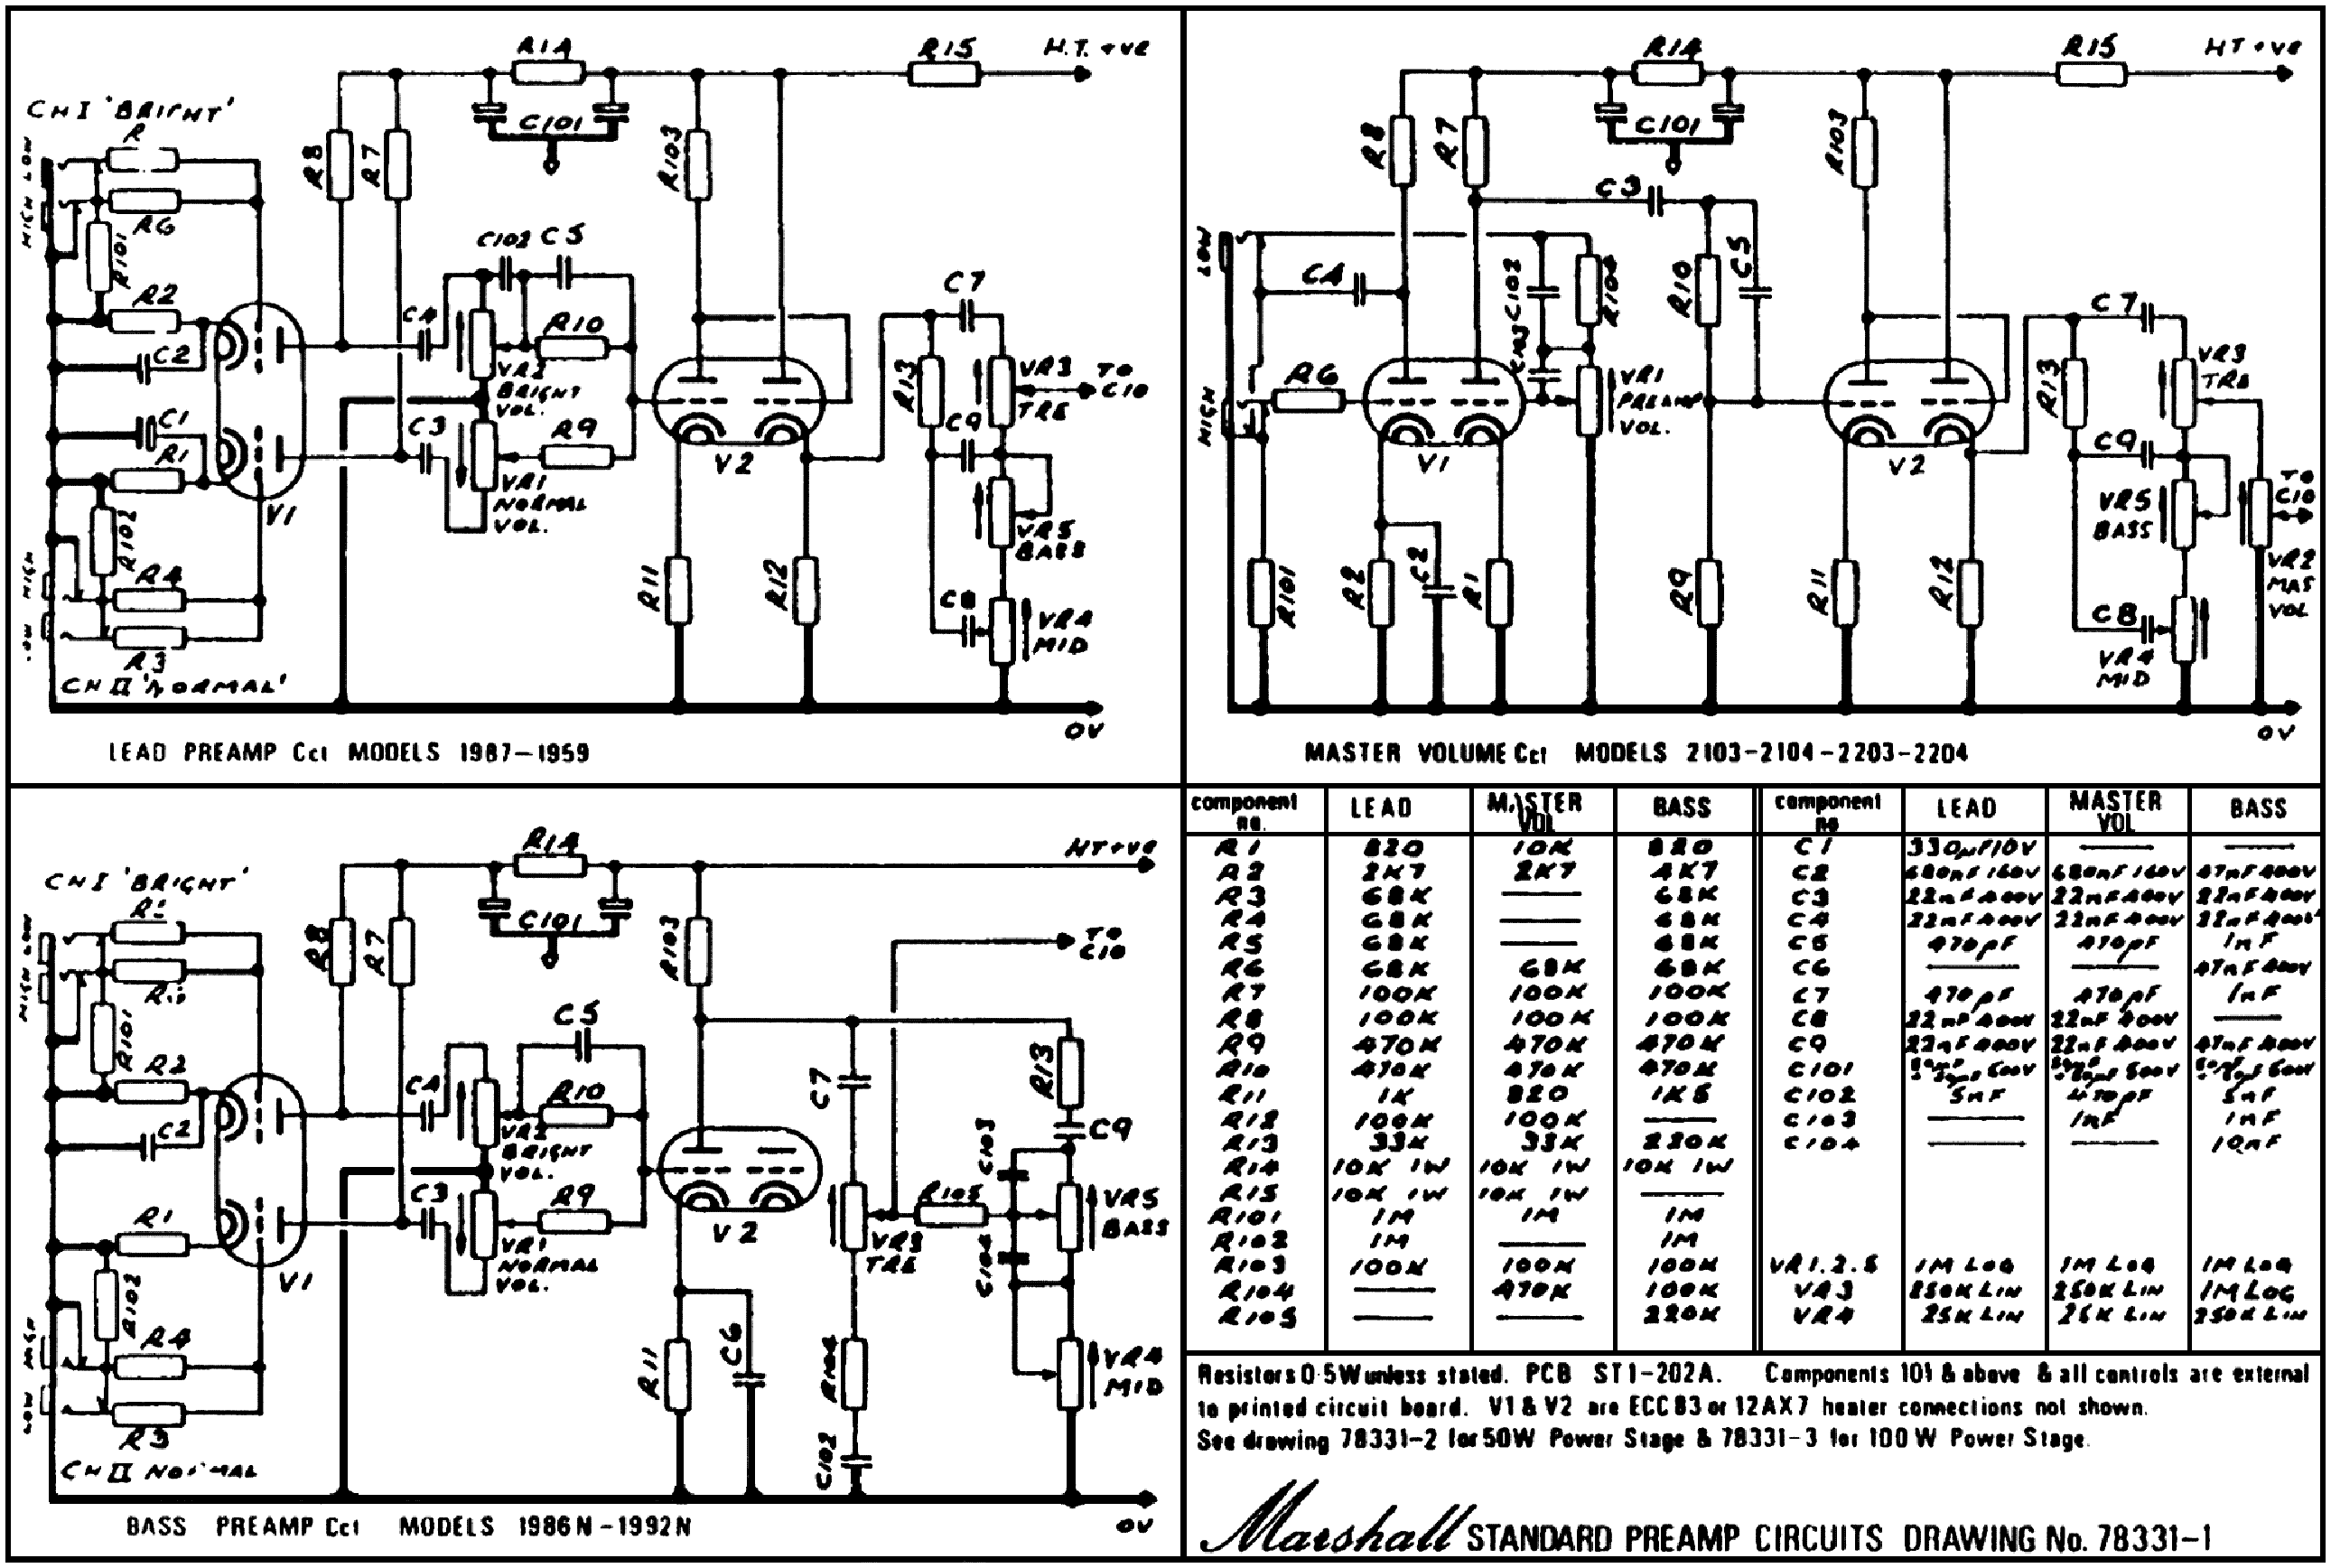 Jmd 1 marshall manual amp